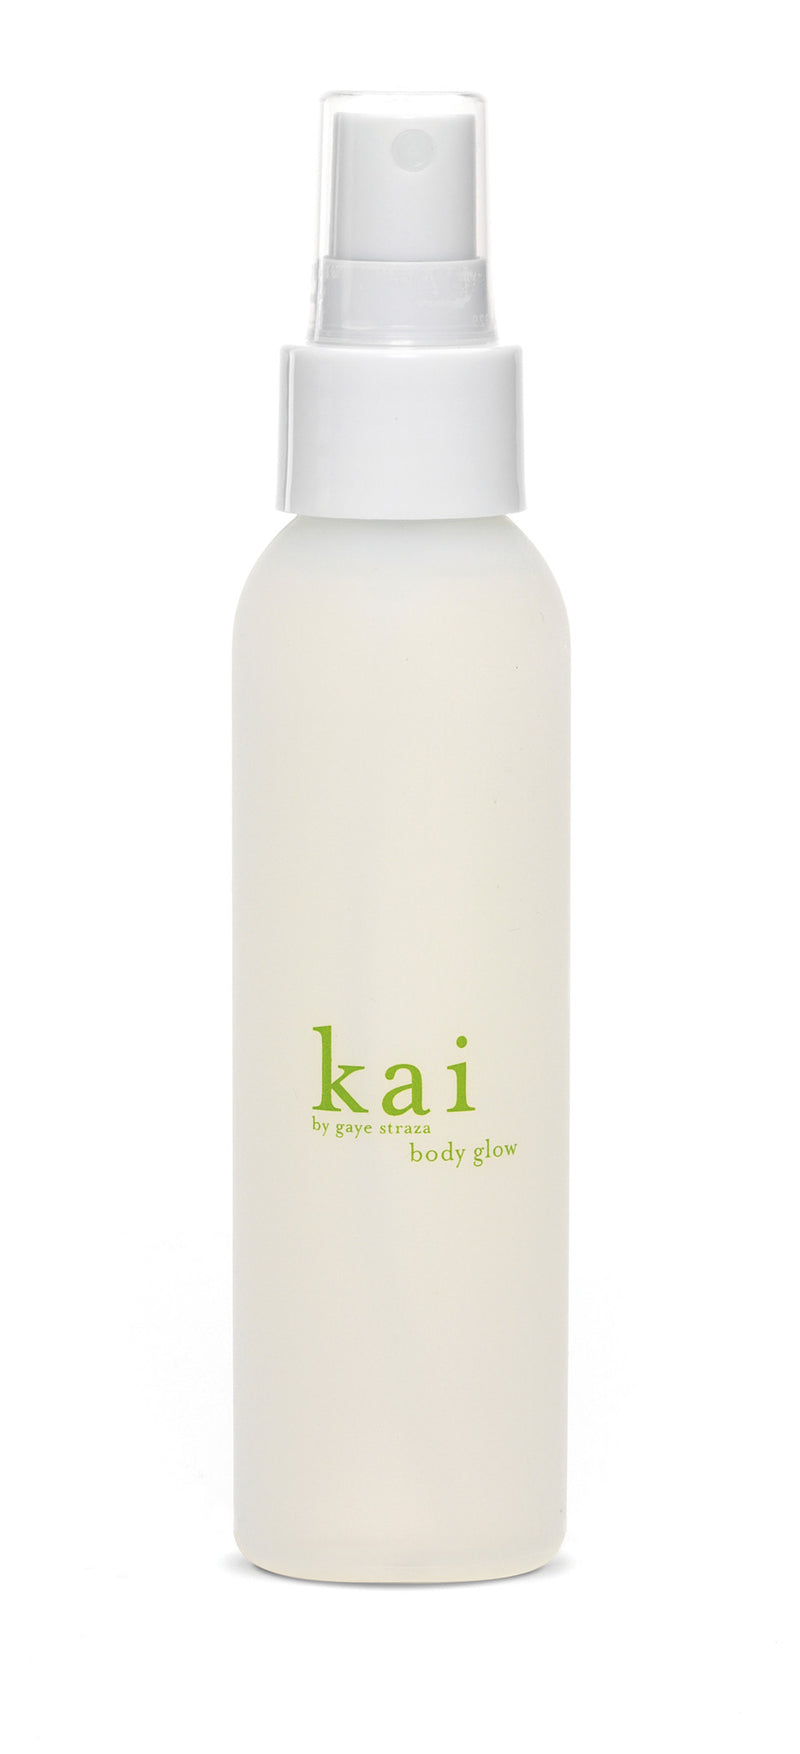 media image for kai body glow design by kai fragrance 1 250